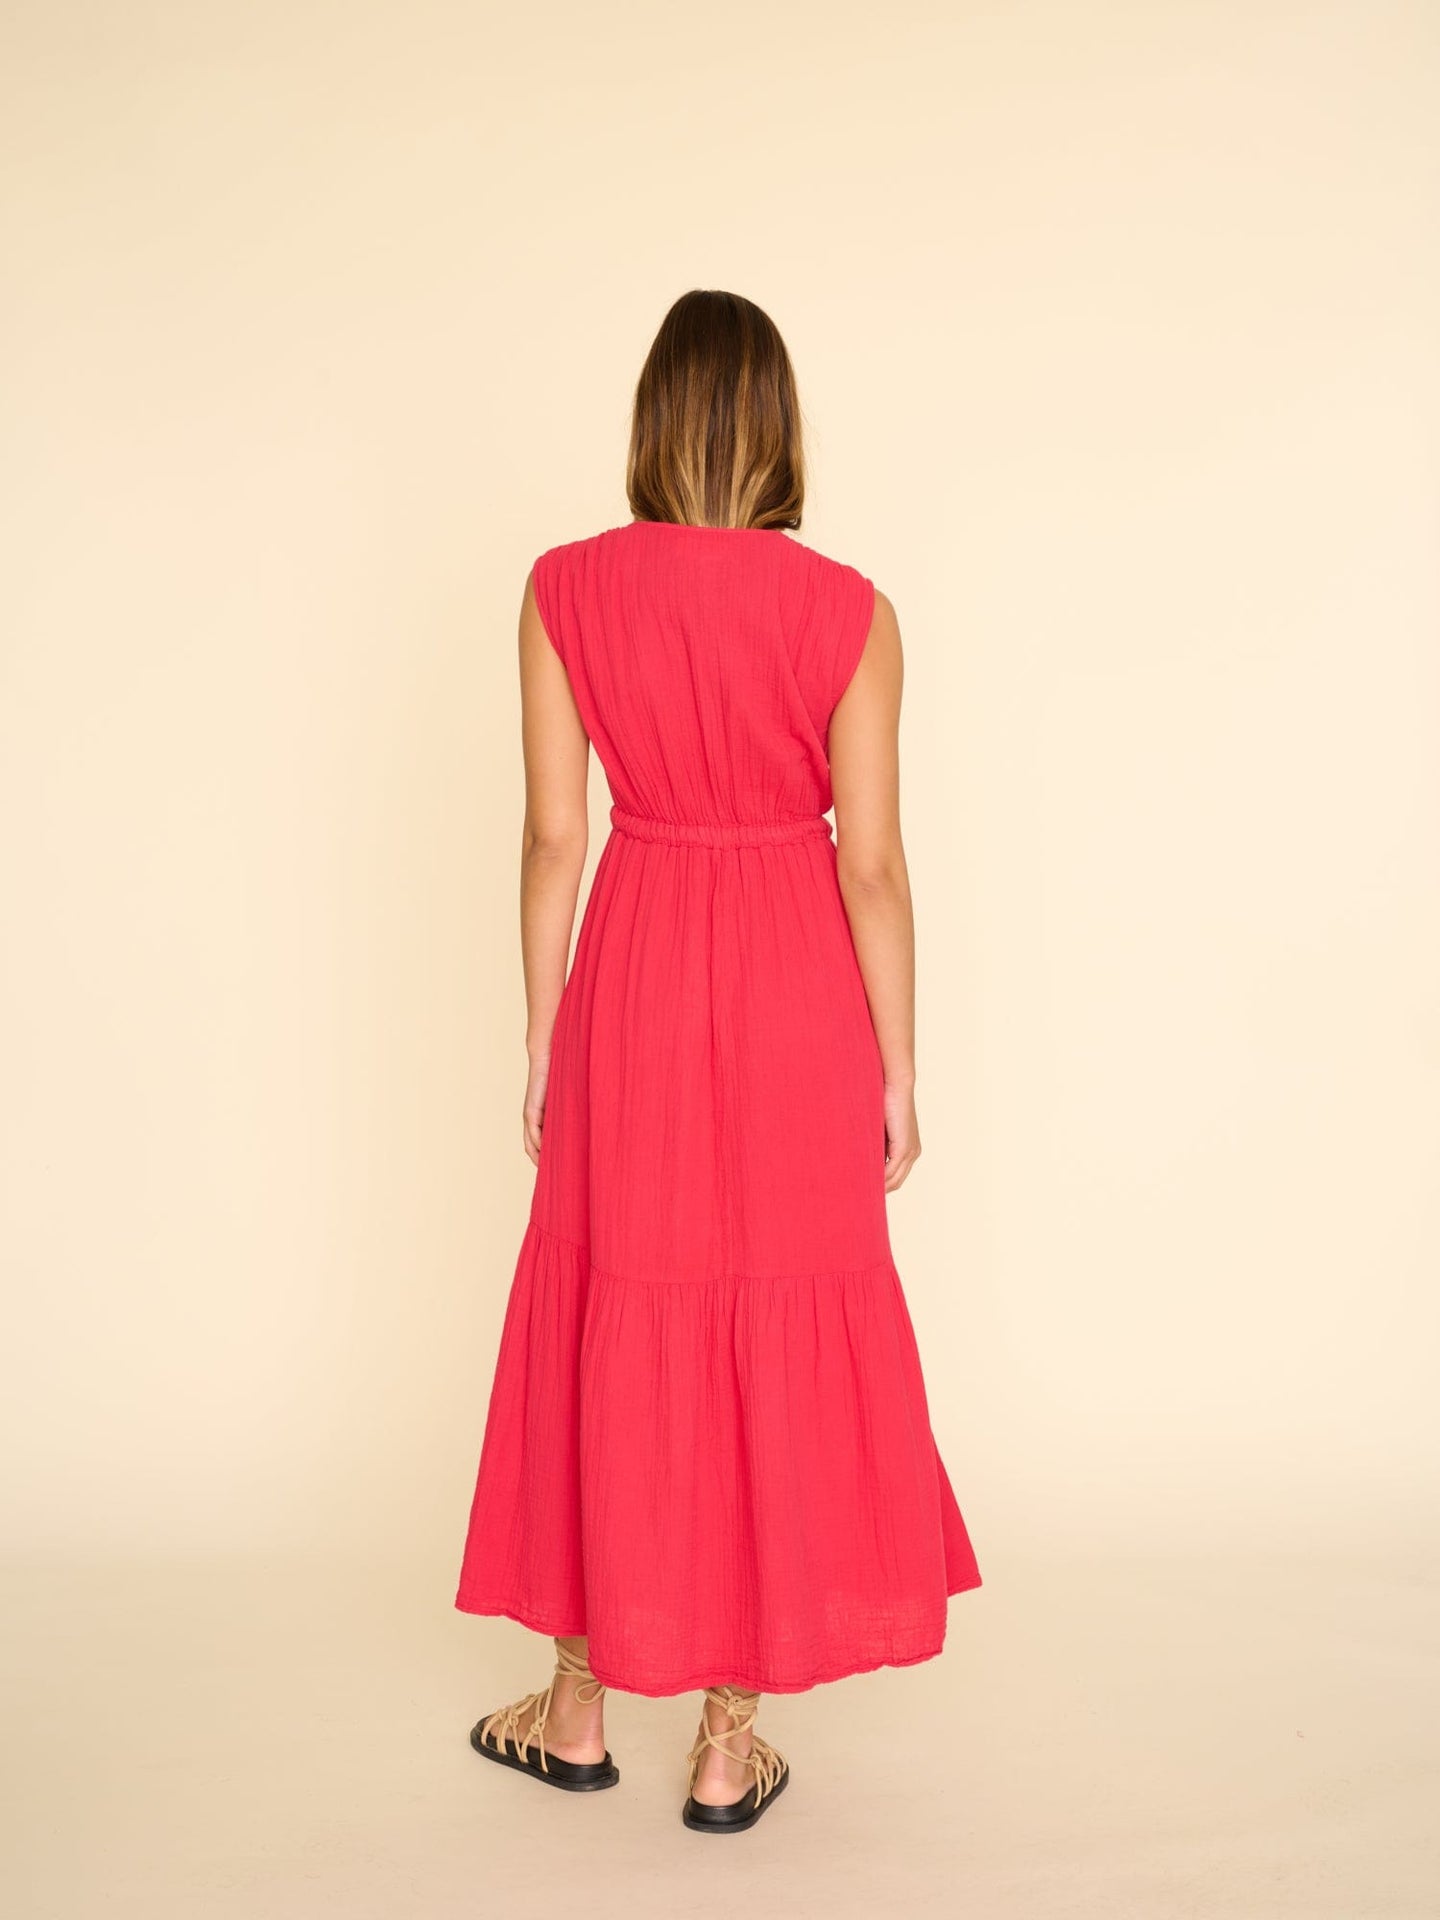 Xirena Dress Scarlet Rosalie Dress